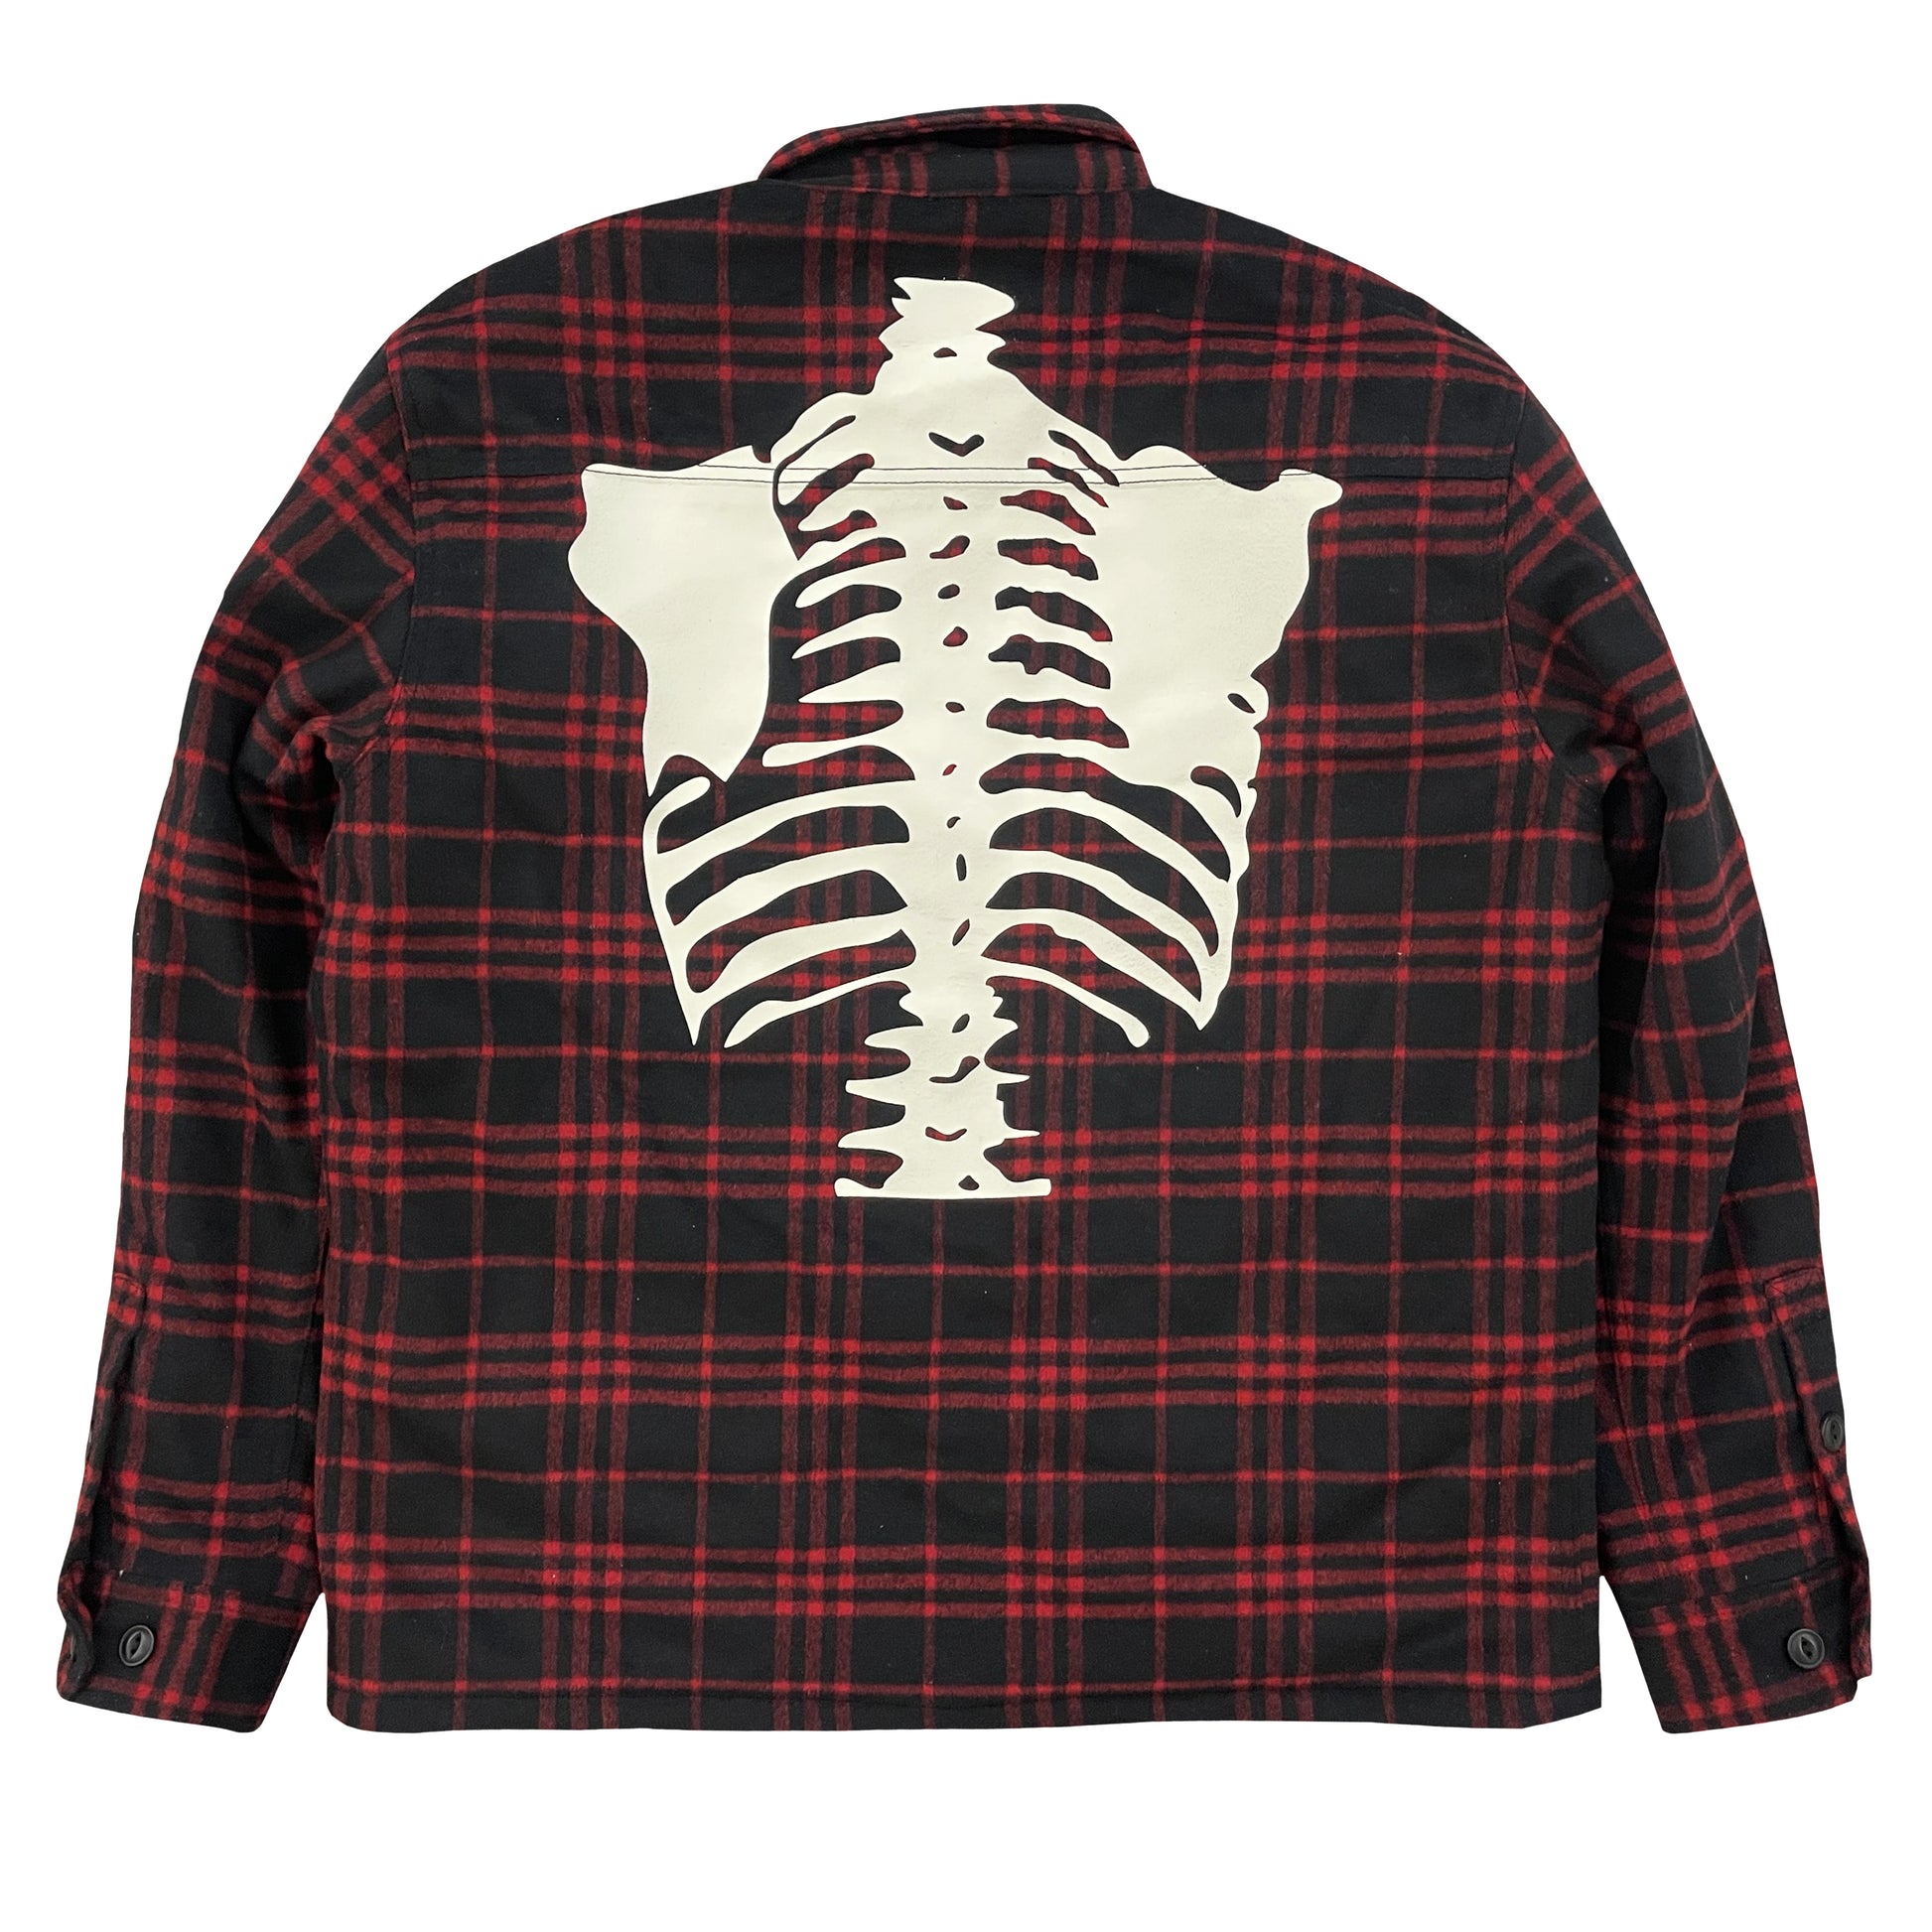 Vanson Leathers Skeleton Check Overshirt Jacket